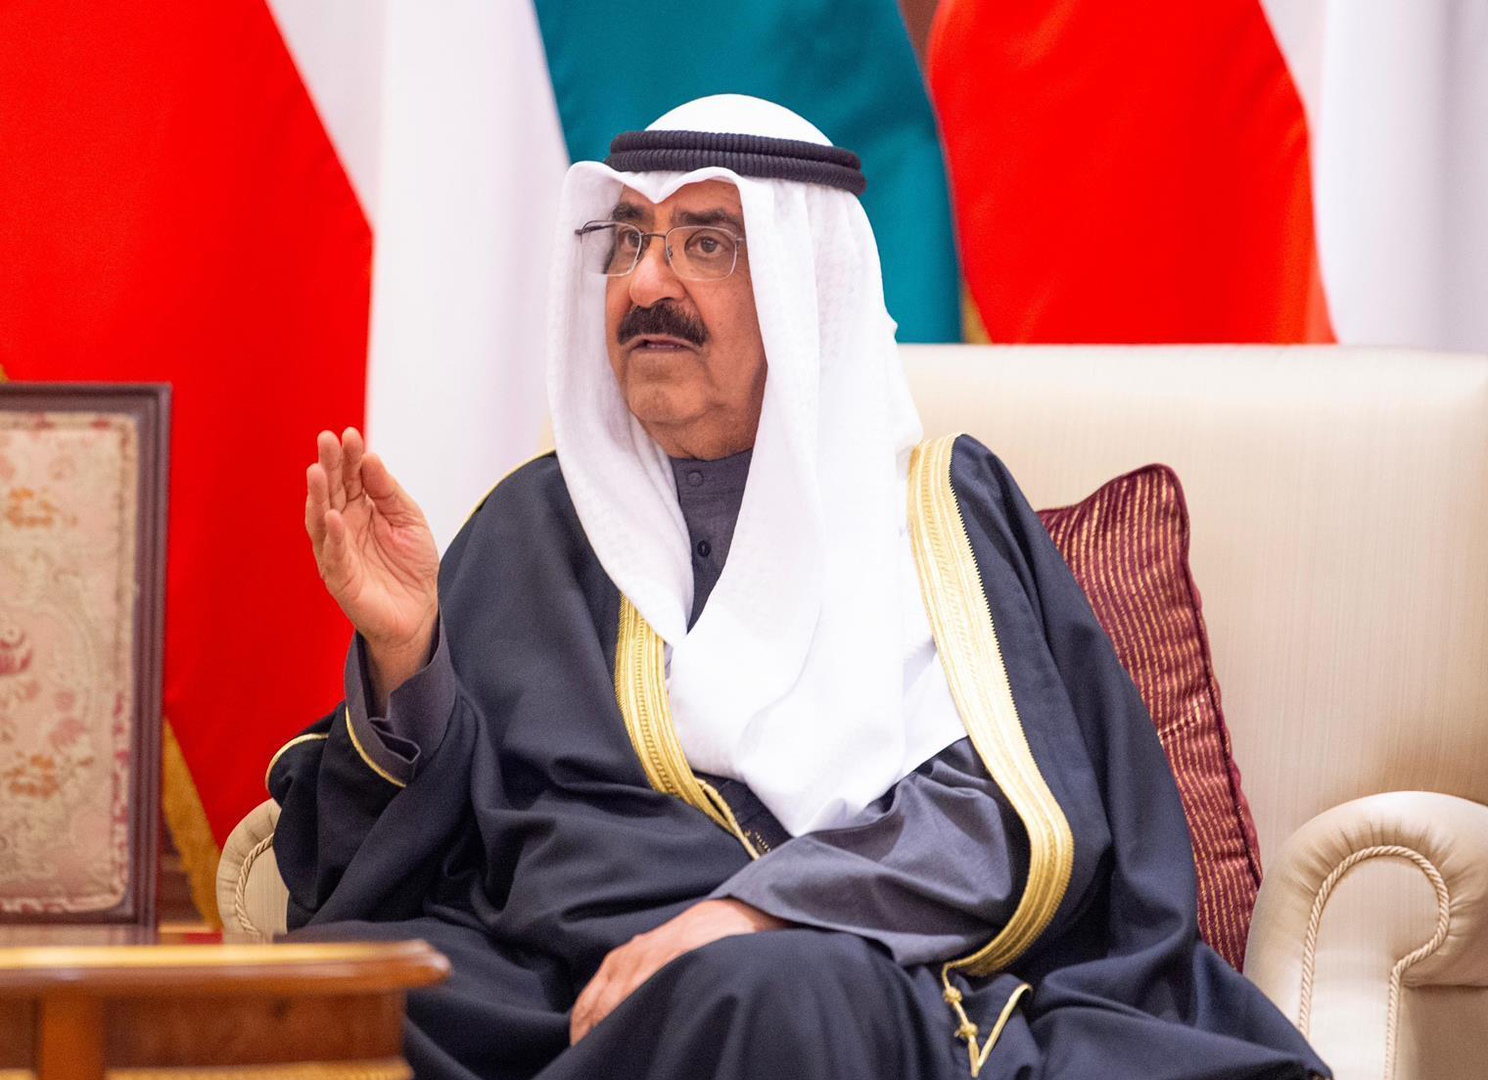 أمير الكويت يهنئ بنجاح أول انتخابات برلمانية في عهده (صور)